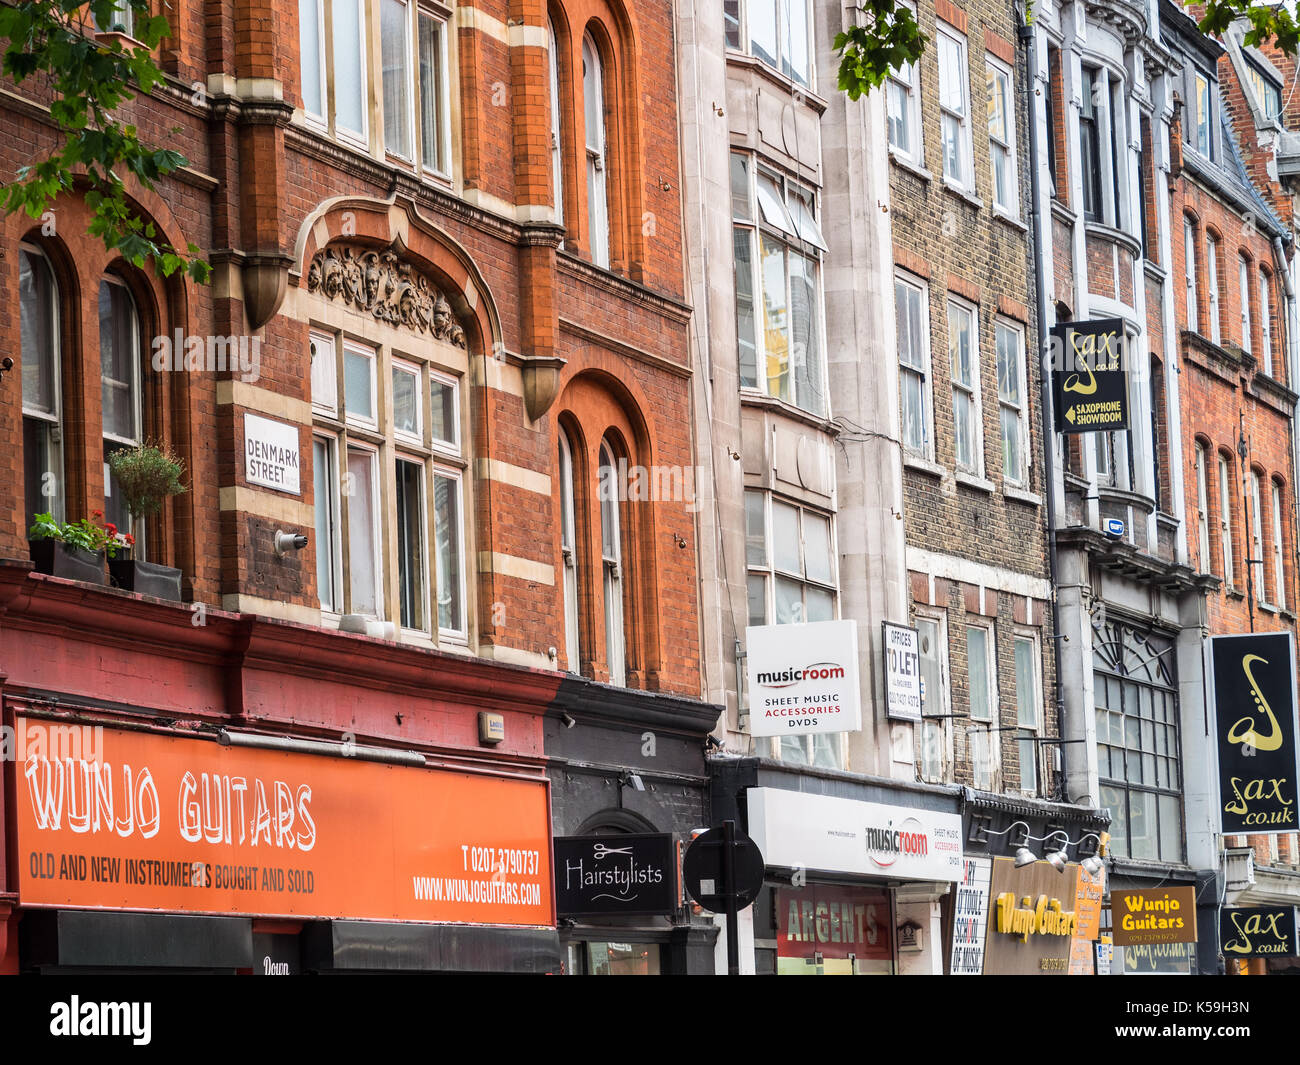 Denmark Street Soho London - Teil Blick auf Londons berühmten Denmark Street, die Heimat von zahlreichen Musical Instrument und Musik Geschäfte Stockfoto